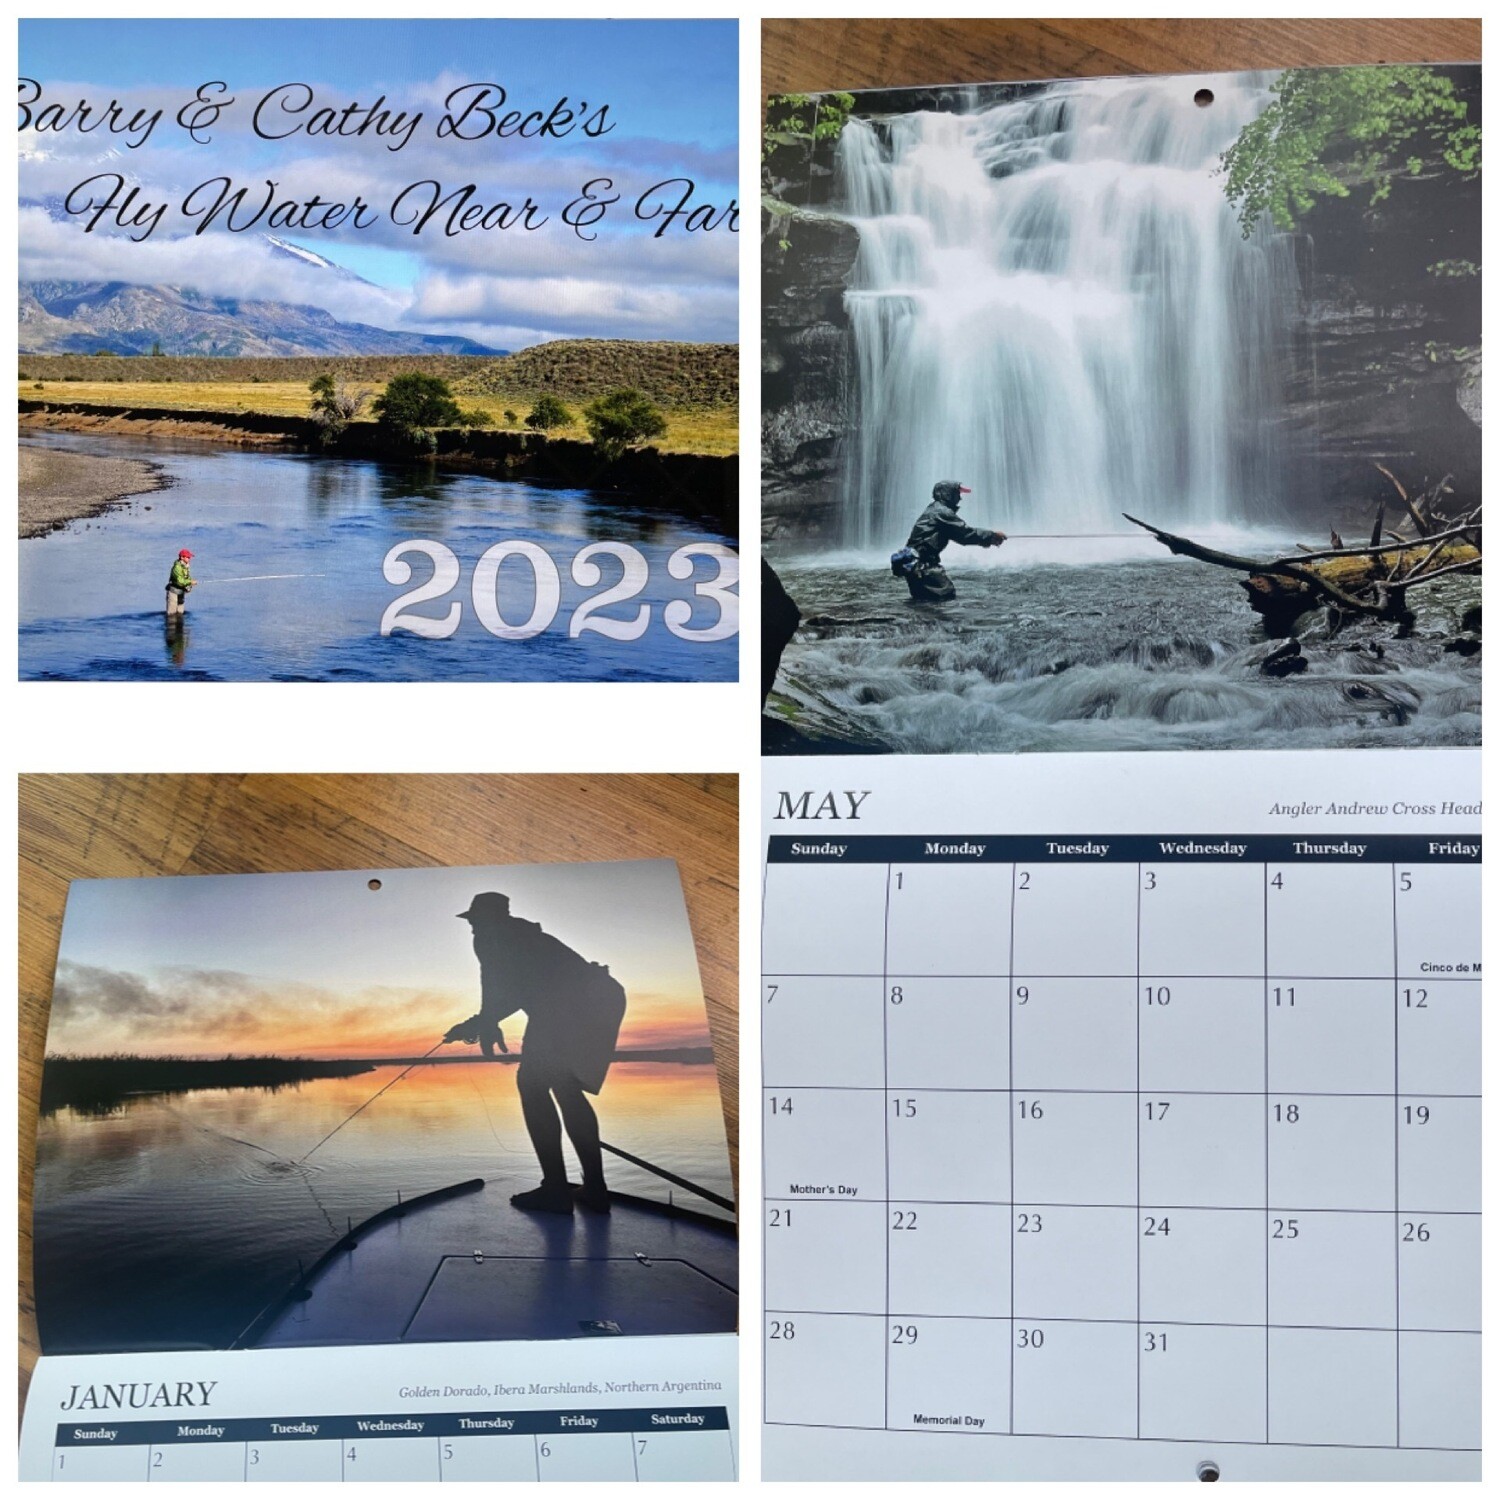 2023 Fly Water Near & Far Calendar